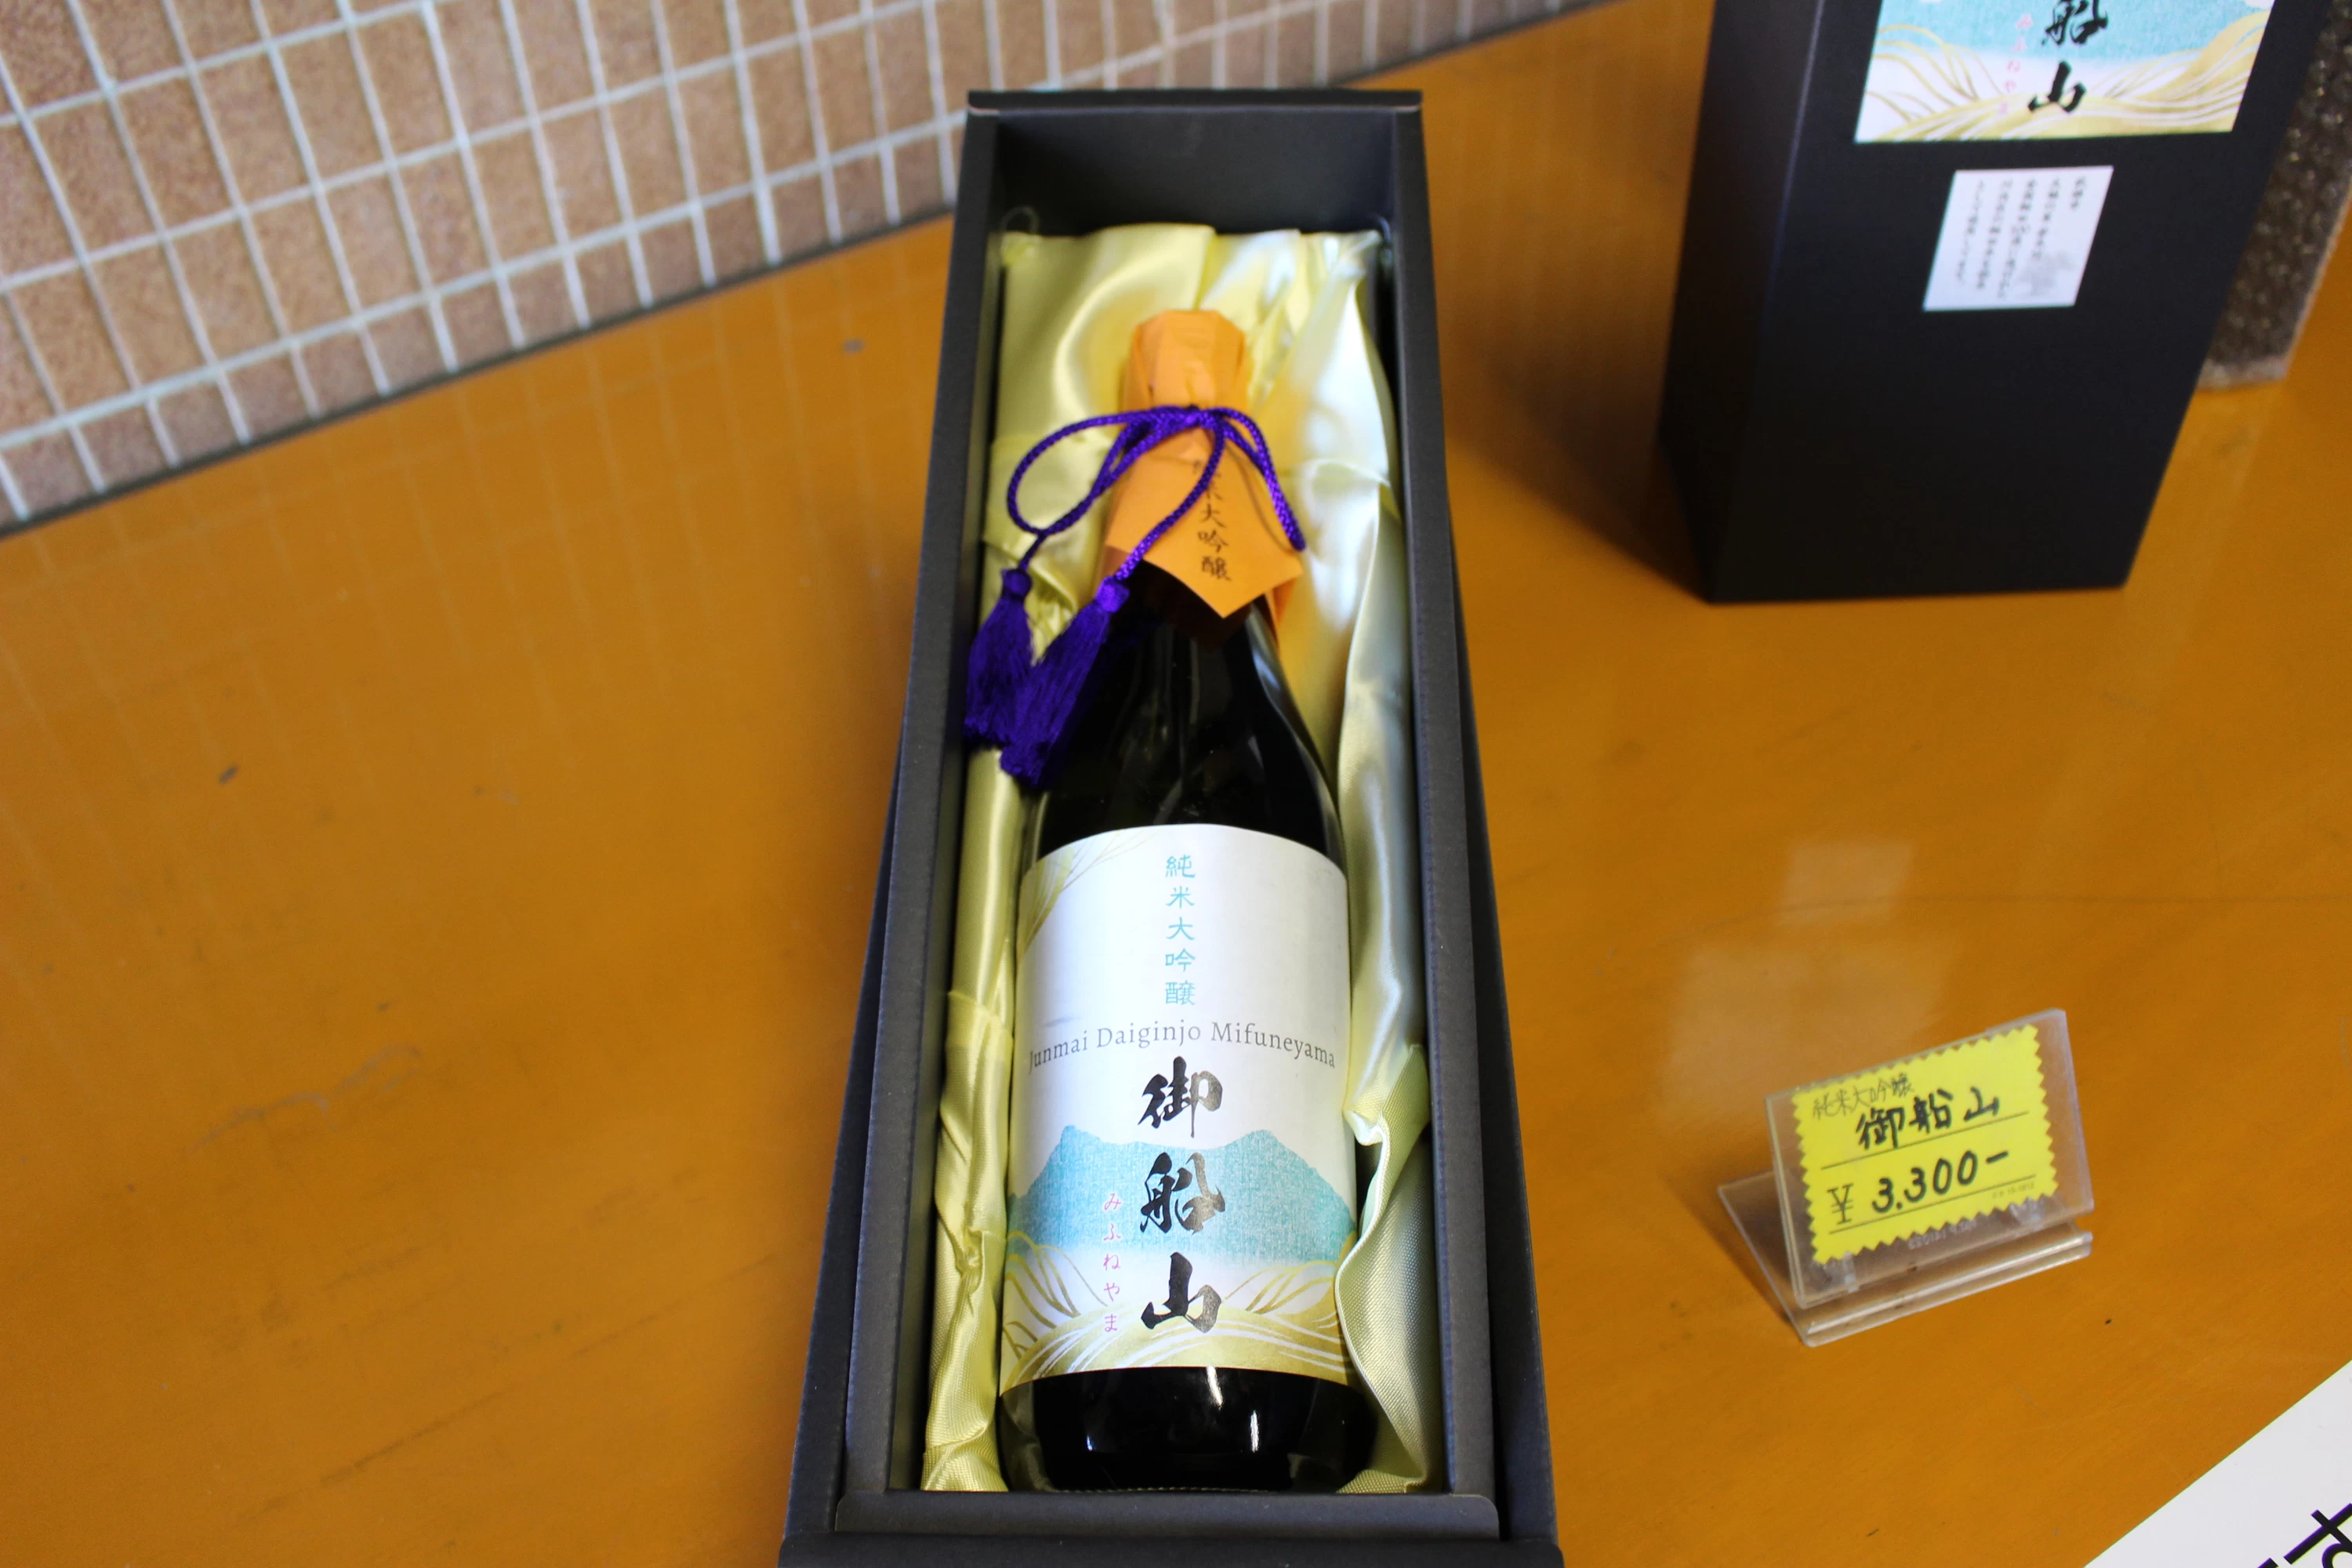 西九州新幹線開業記念で誕生した武雄市の日本酒「御船山」を知る